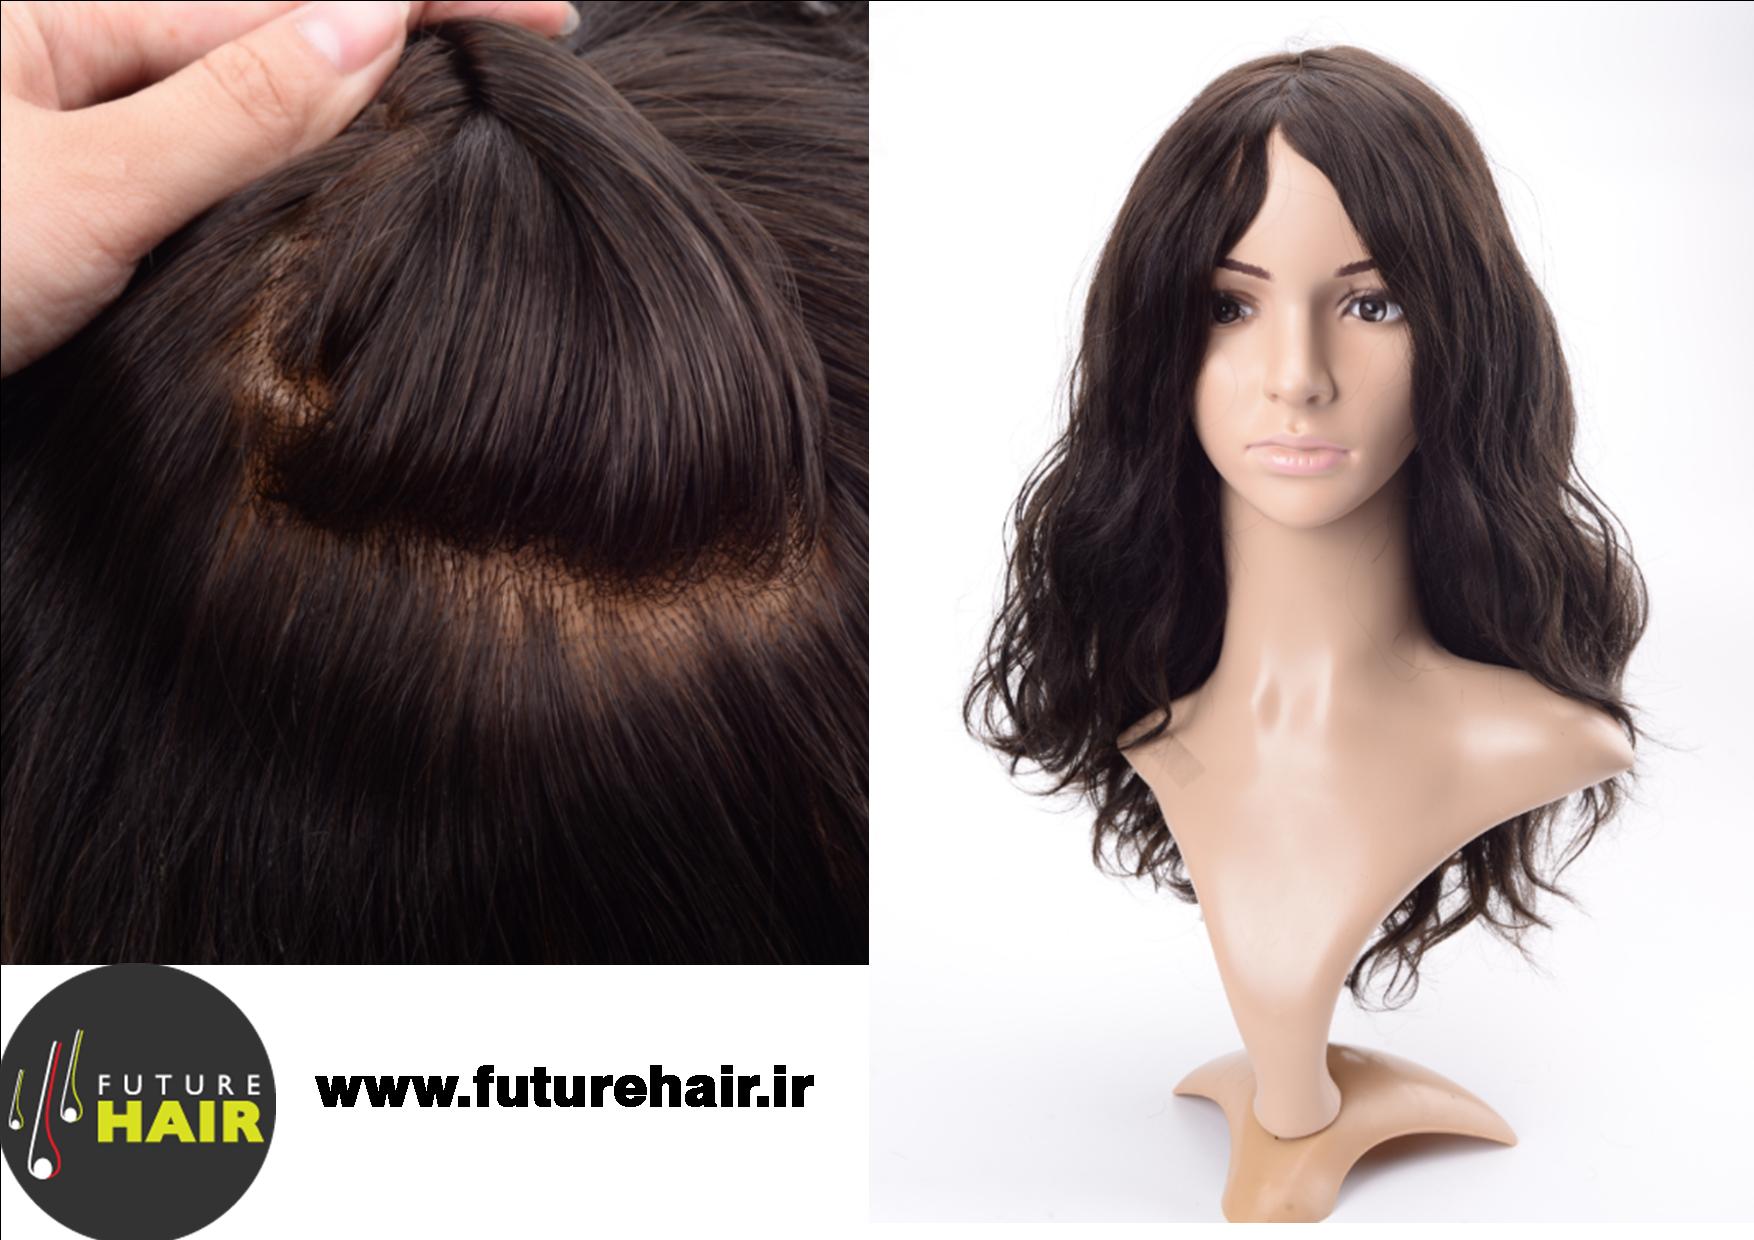 Da Future Hair arriva la protesi tricologica Liberty che risolve l'alopecia  totale o avanzata - AndradeLab.it